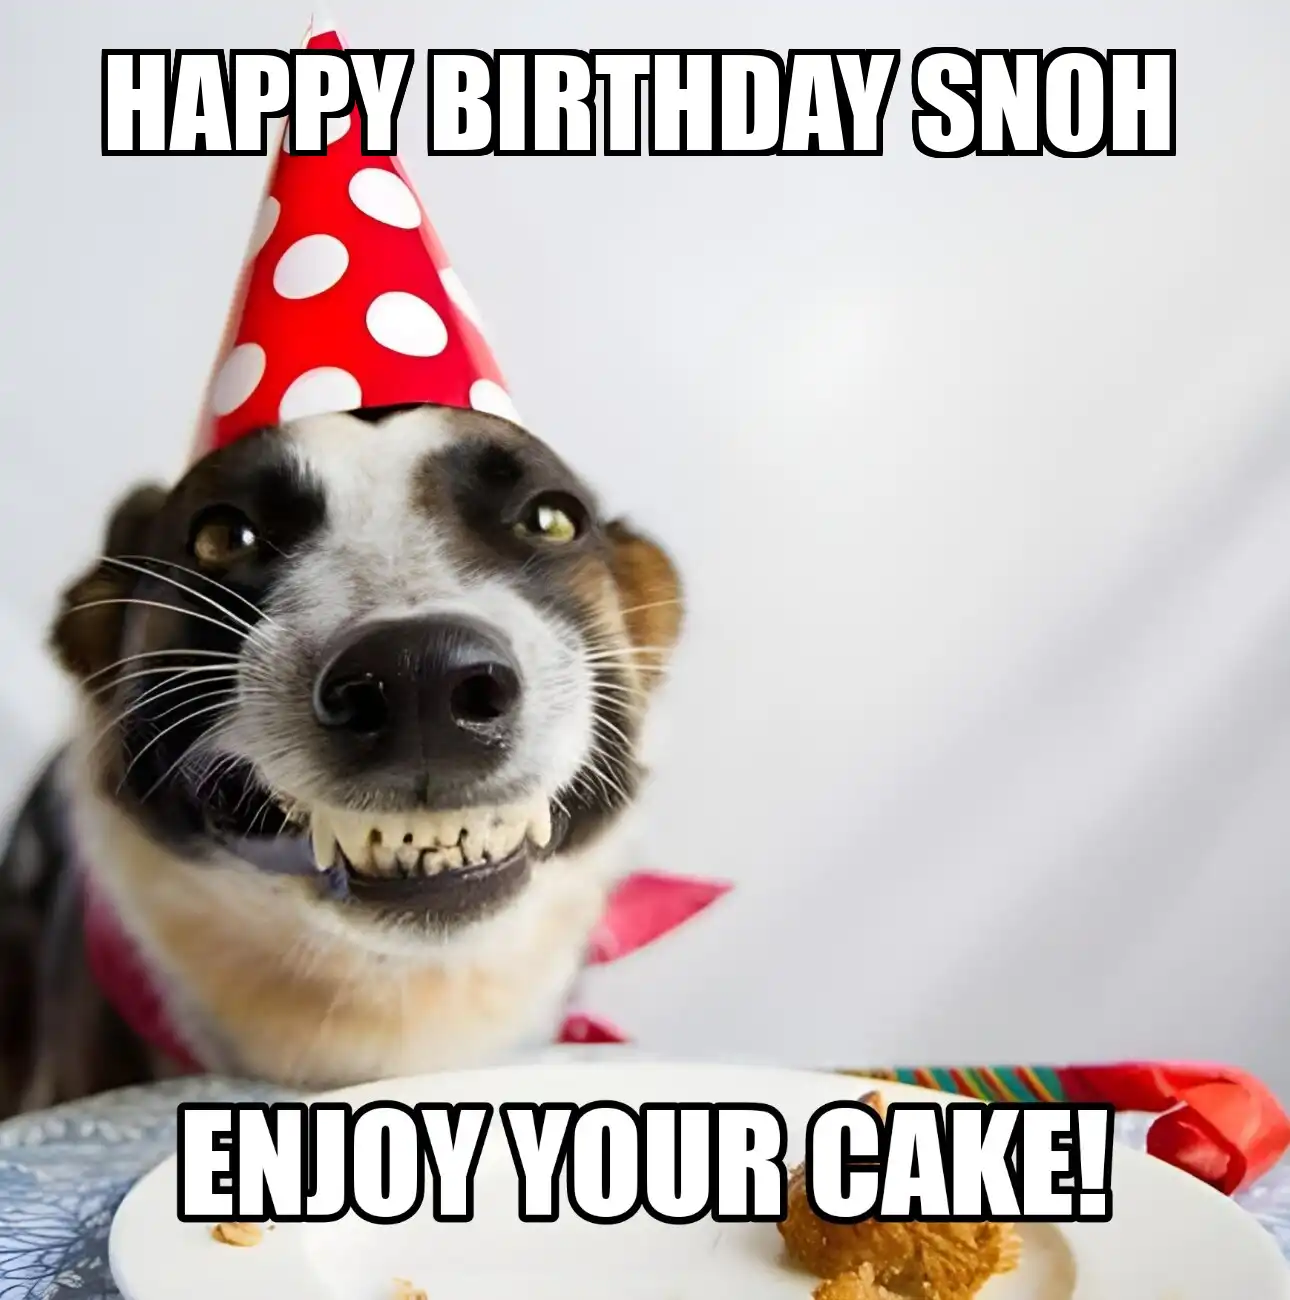 Happy Birthday Snoh Enjoy Your Cake Dog Meme